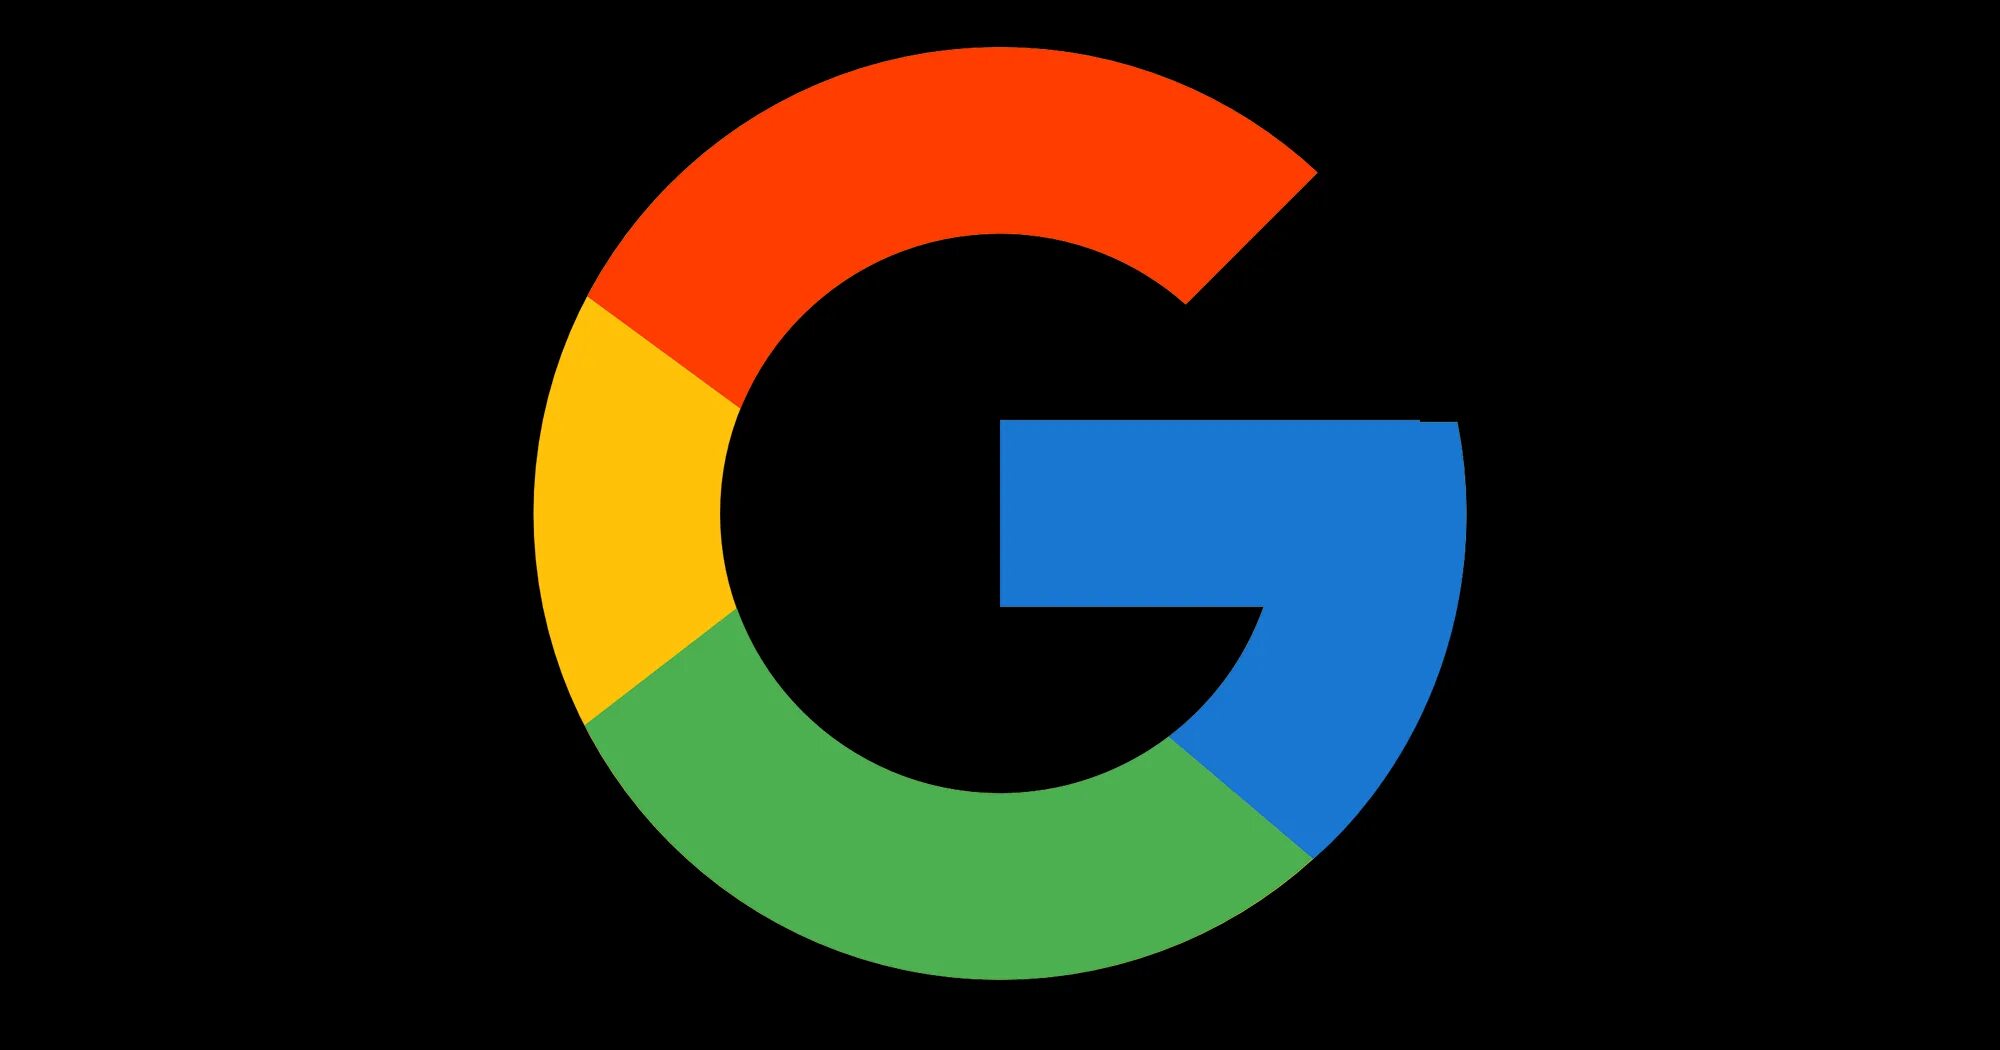 Channel google. Гугл лого. Логотип гугл на черном фоне. Гугл картинки.